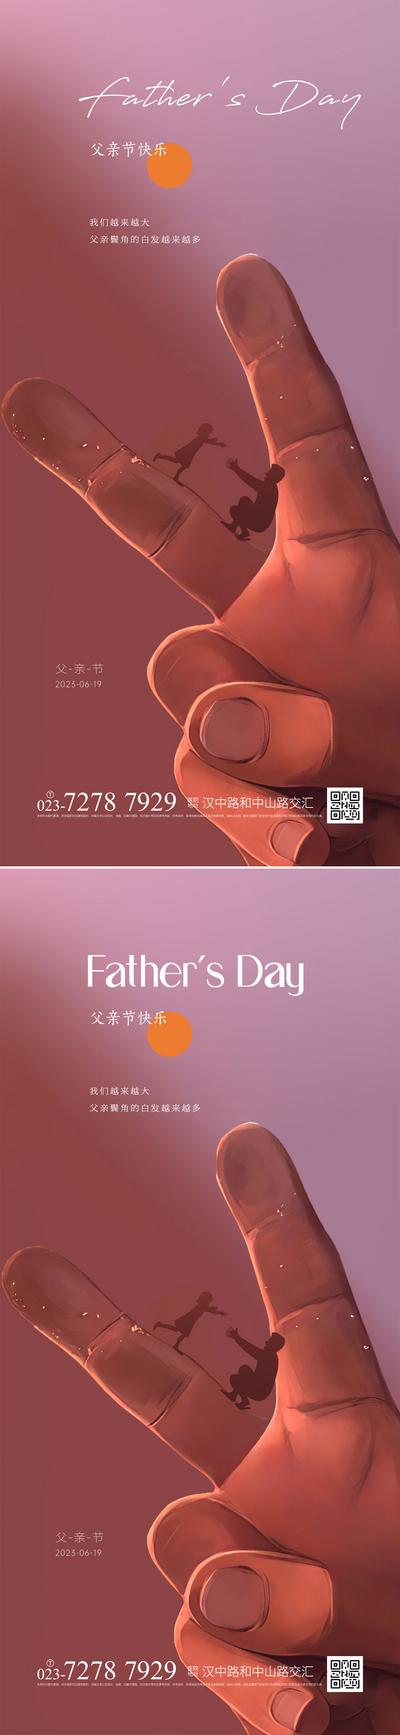 南门网 广告 海报 节日 父亲节 简约 创意 剪影 妇女 系列